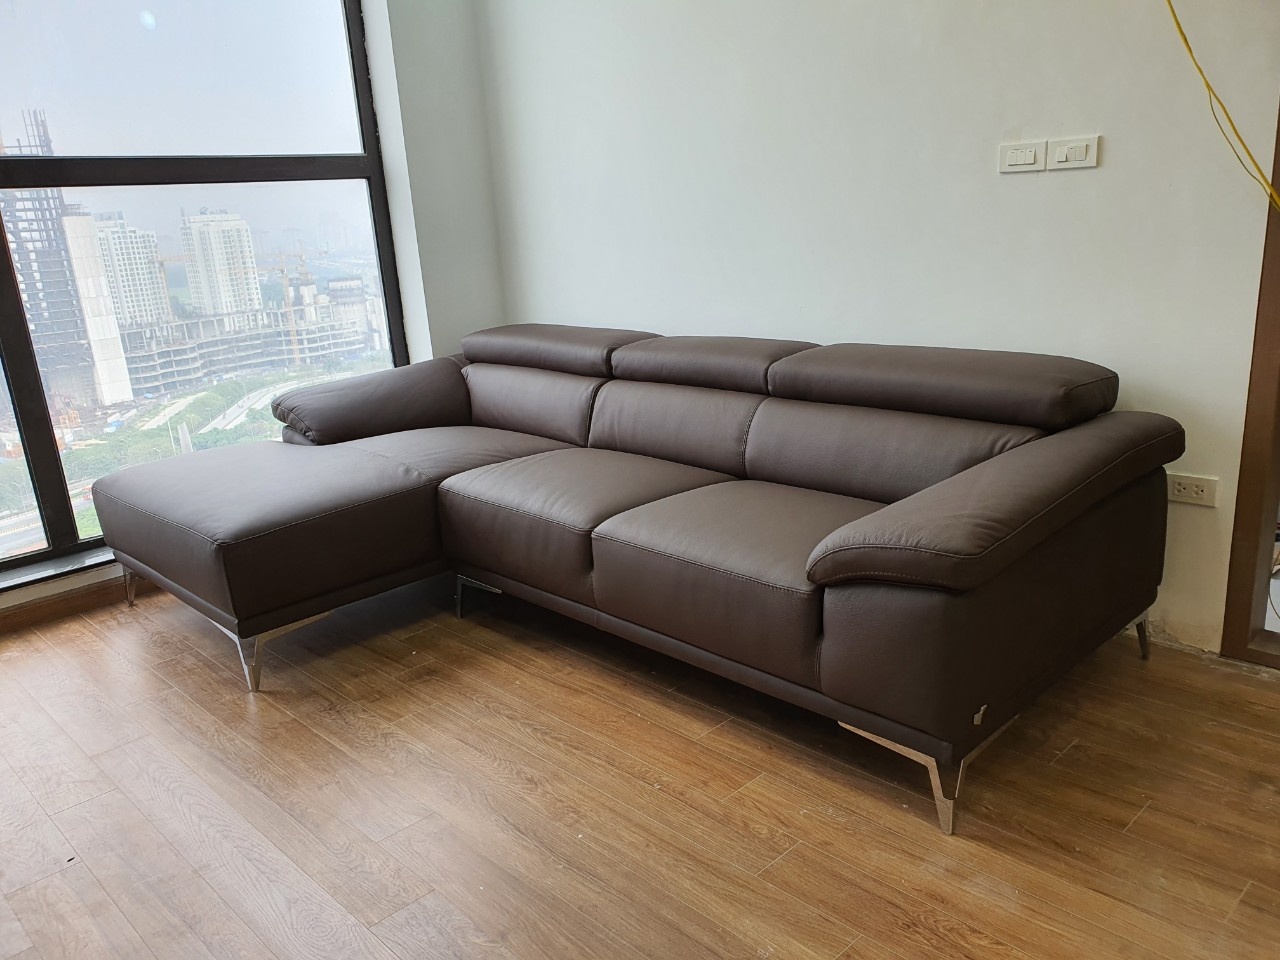 Mẫu ghế sofa góc đẹp phòng khách nhà chung cư chất liệu bọc da sang trọng cho bạn